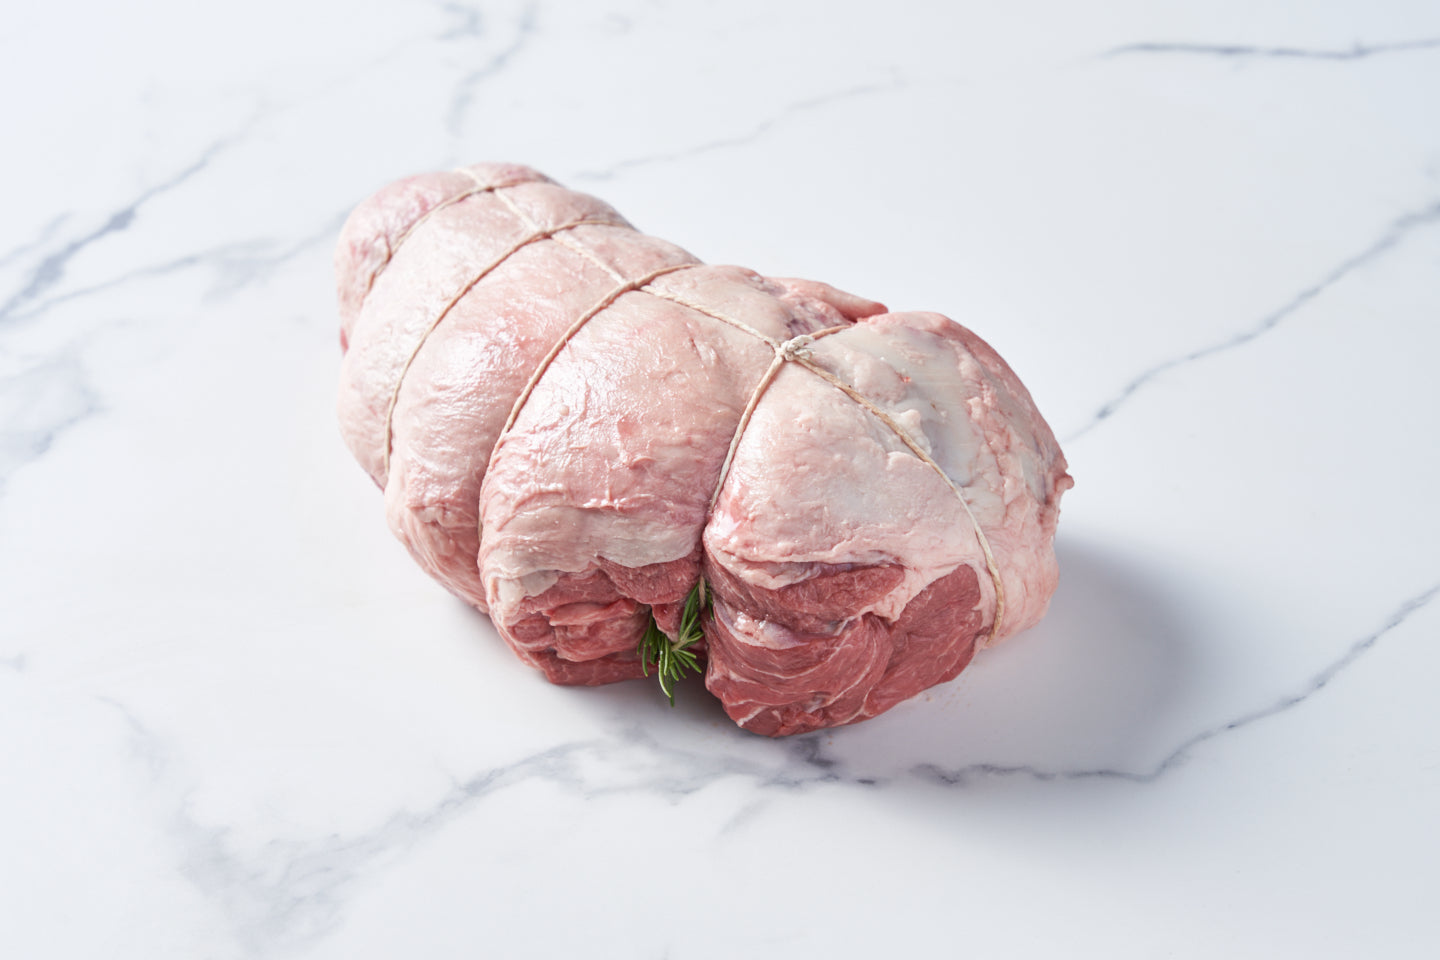 Boneless Lamb Leg Roast with Rosemary (2.3 - 2.5kg)